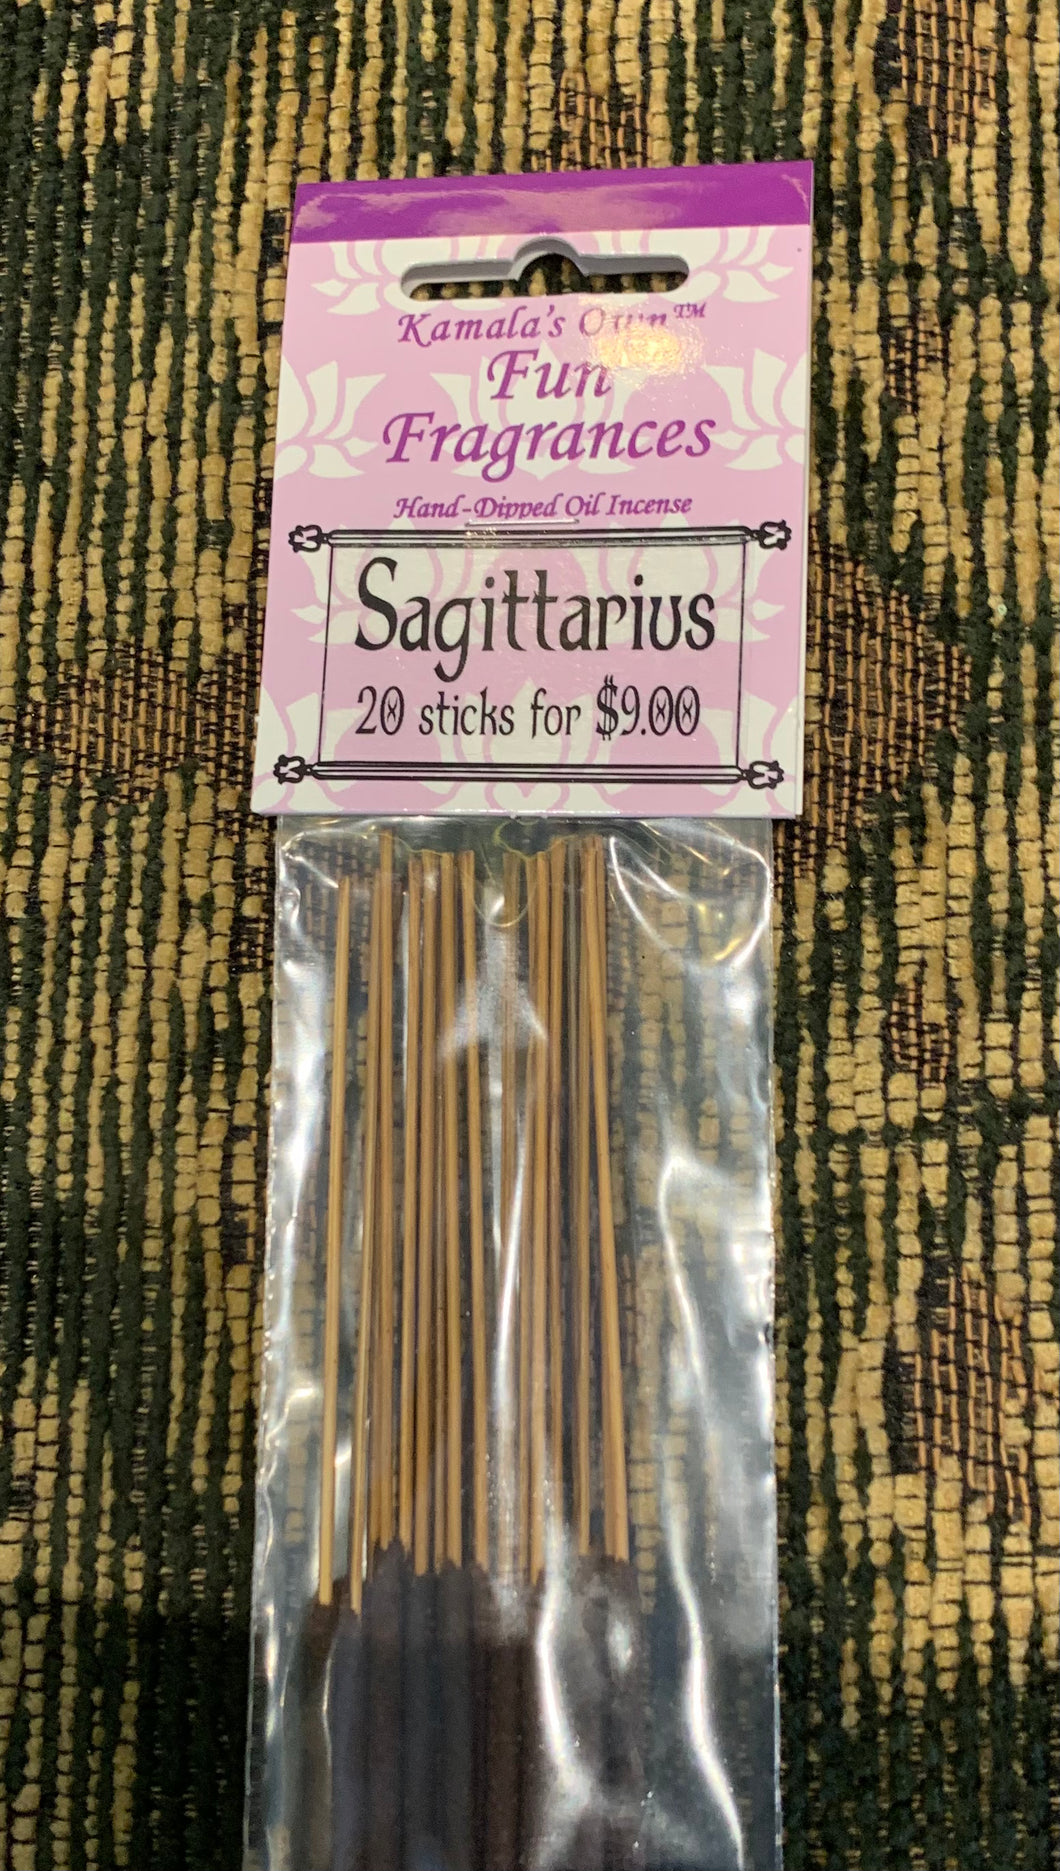 Sagittarius incense sticks